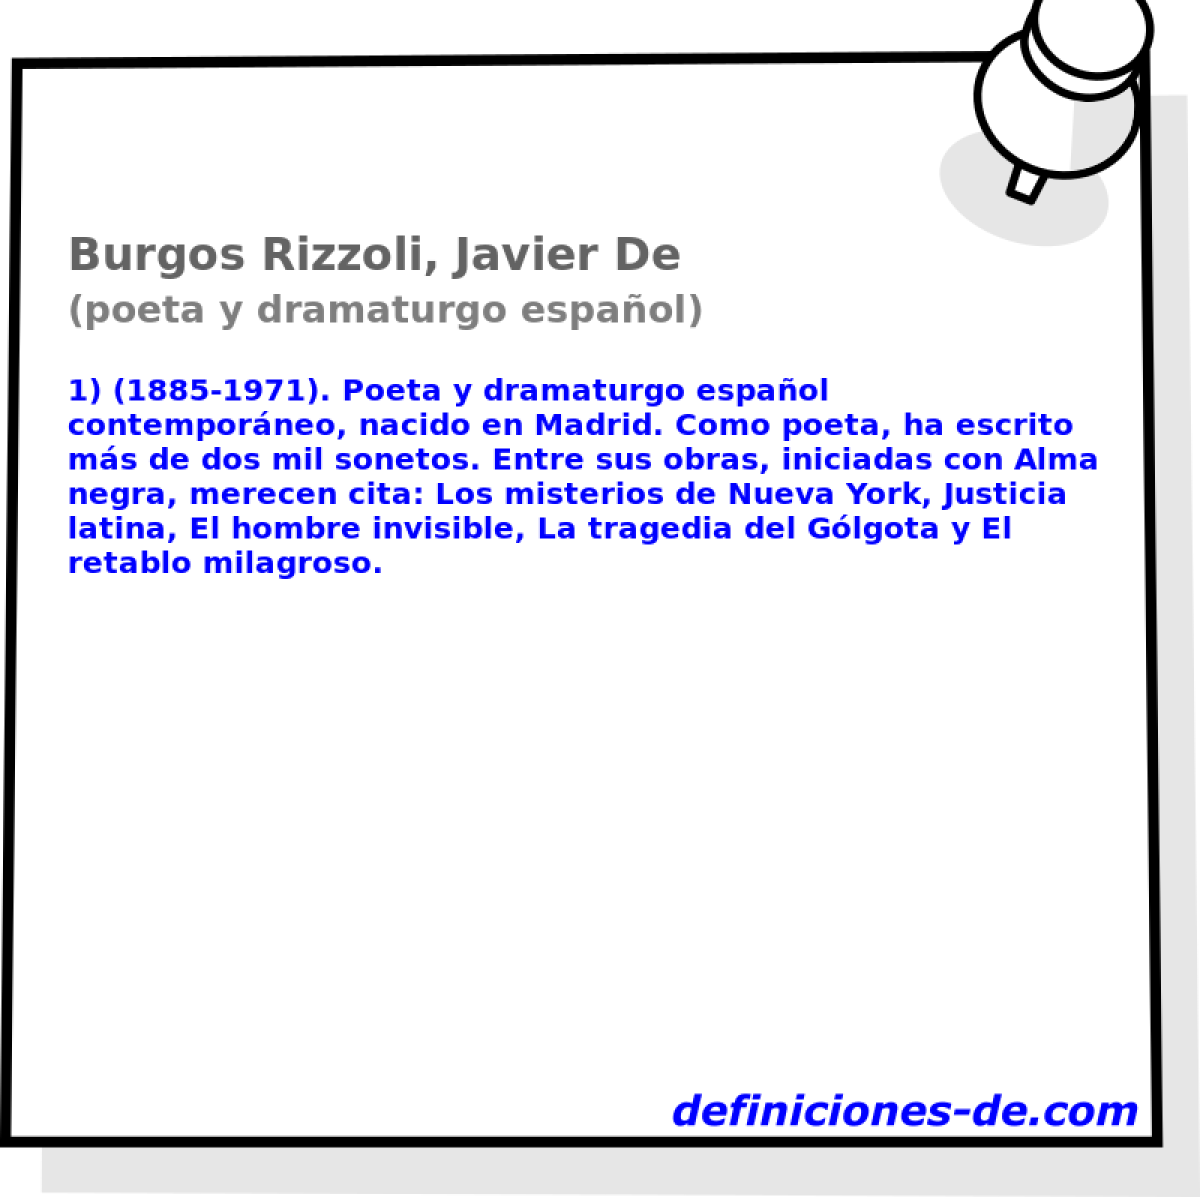 Burgos Rizzoli, Javier De (poeta y dramaturgo espaol)